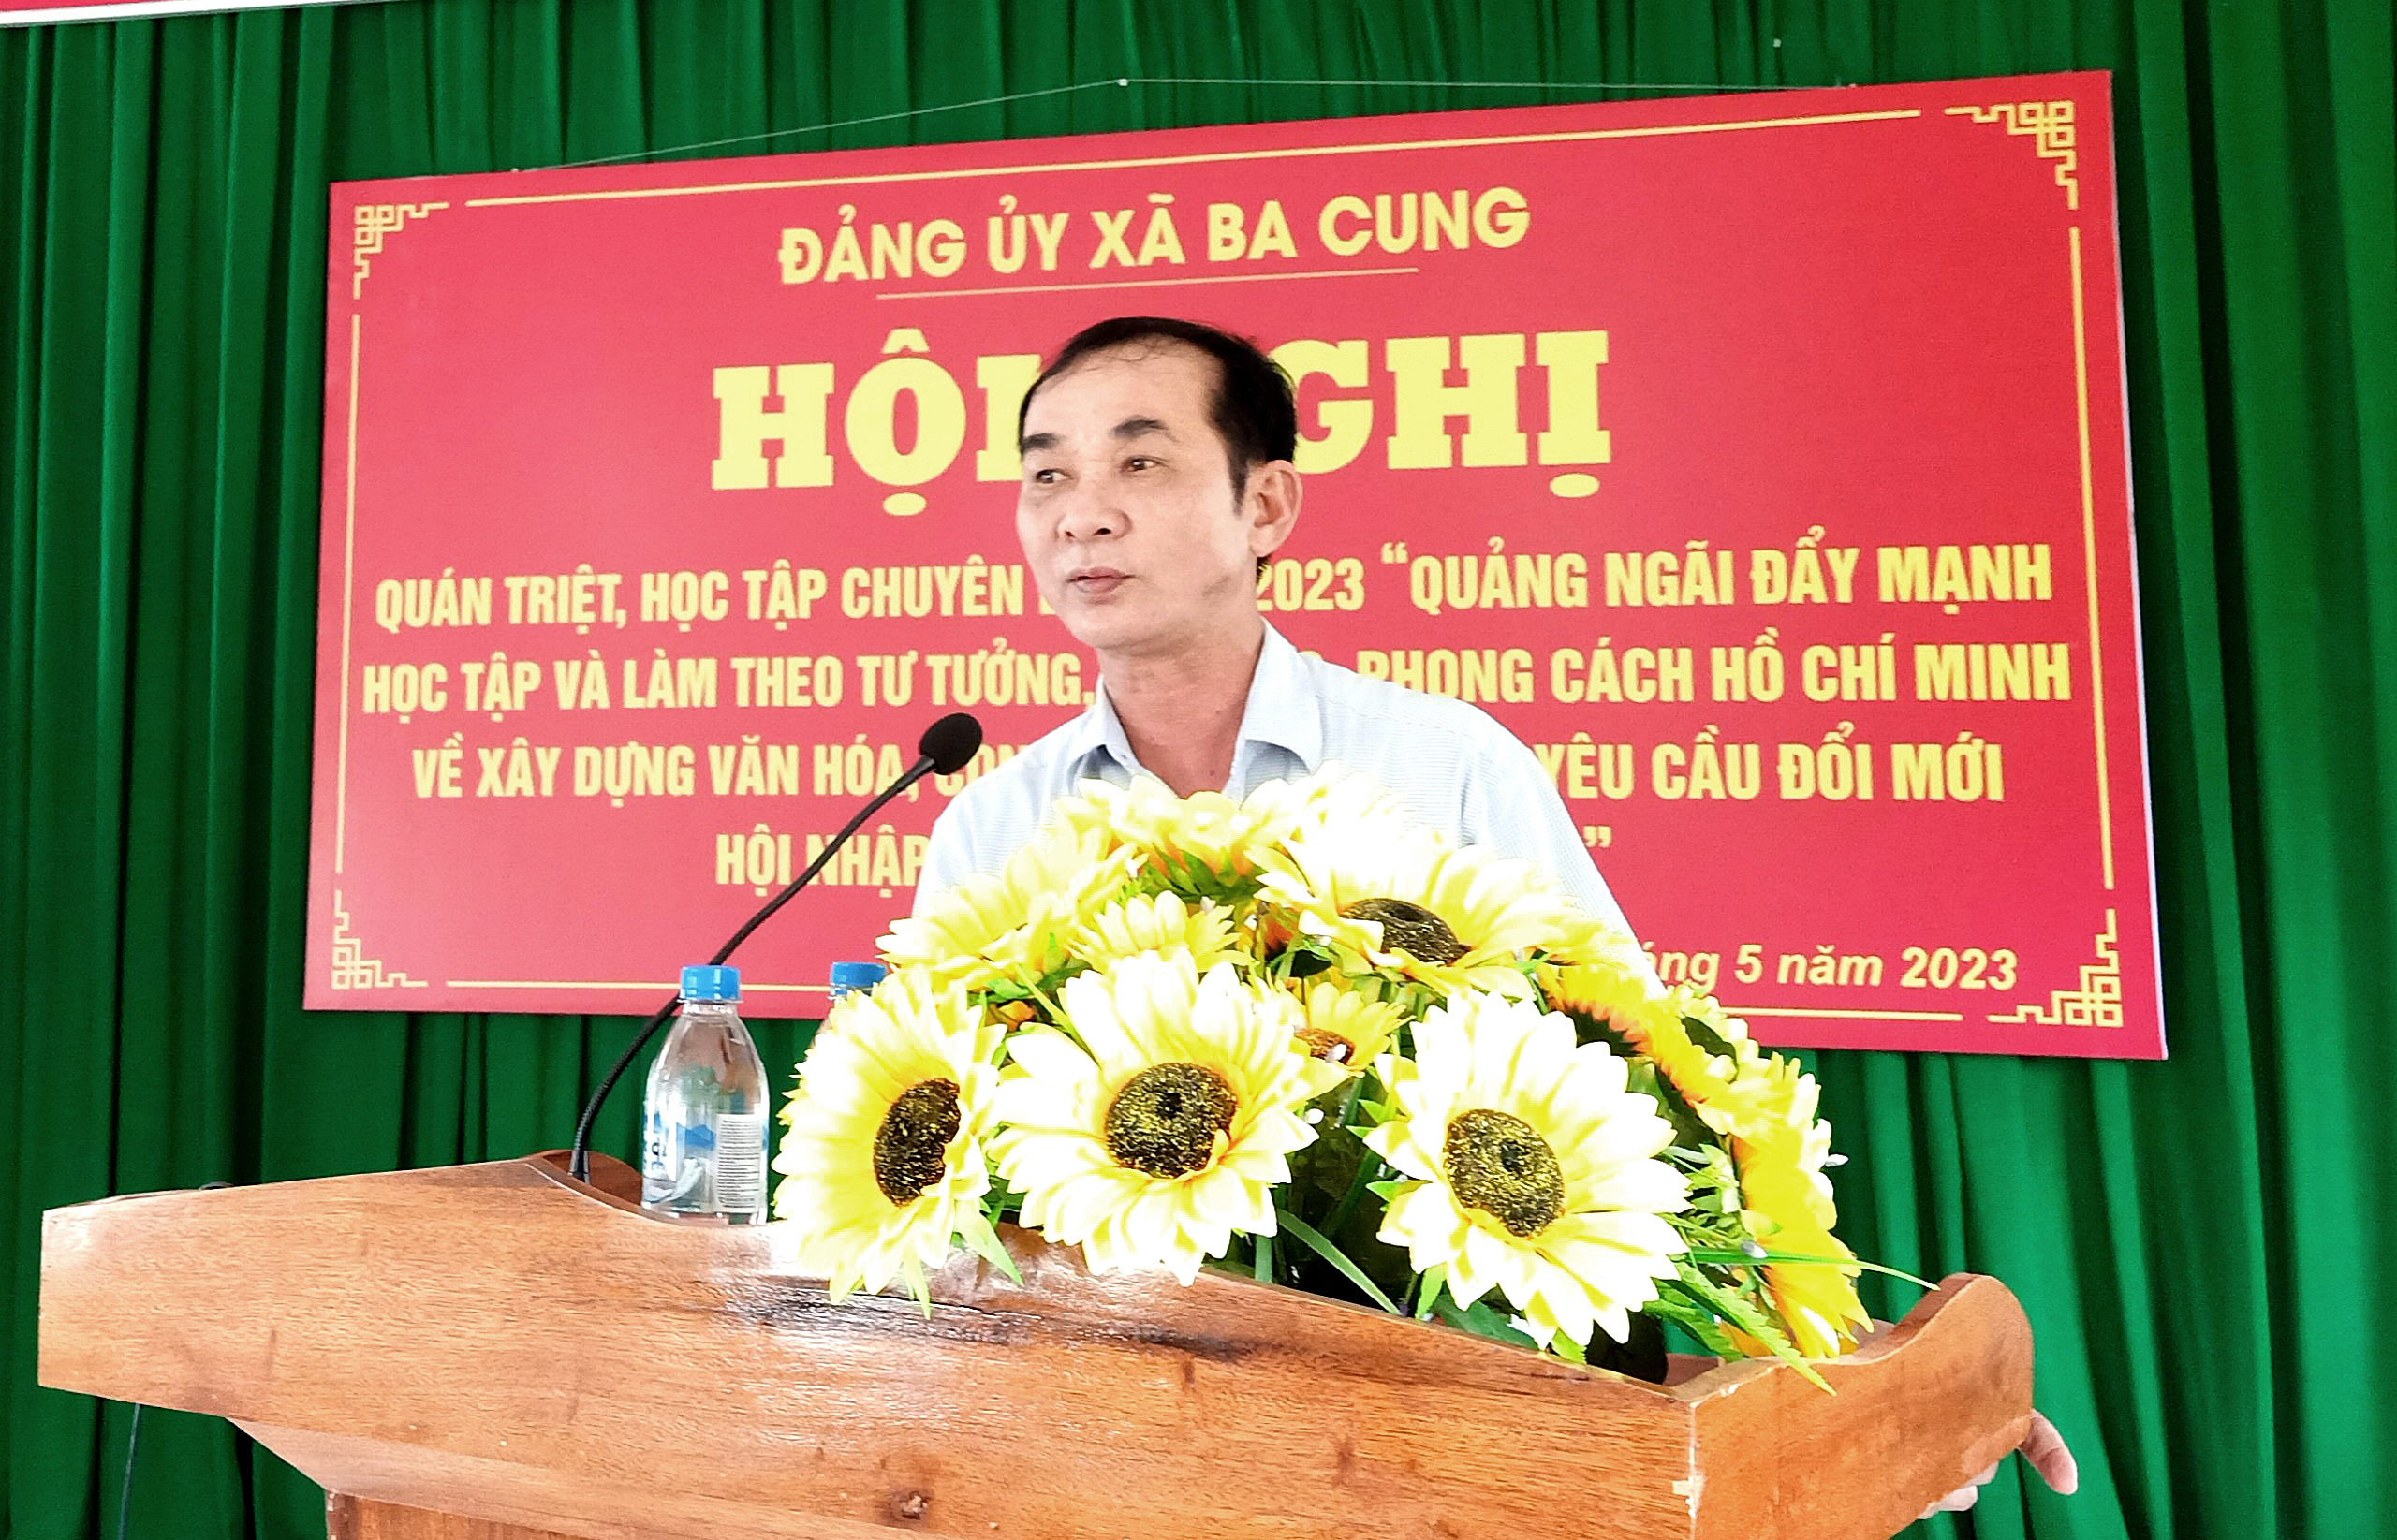 Đảng ủy xã Ba Cung tổ chức hội nghị quán triệt chuyên đề năm 2023 về học tập và làm theo tư tưởng, đạo đức, phong cách Hồ Chí Minh